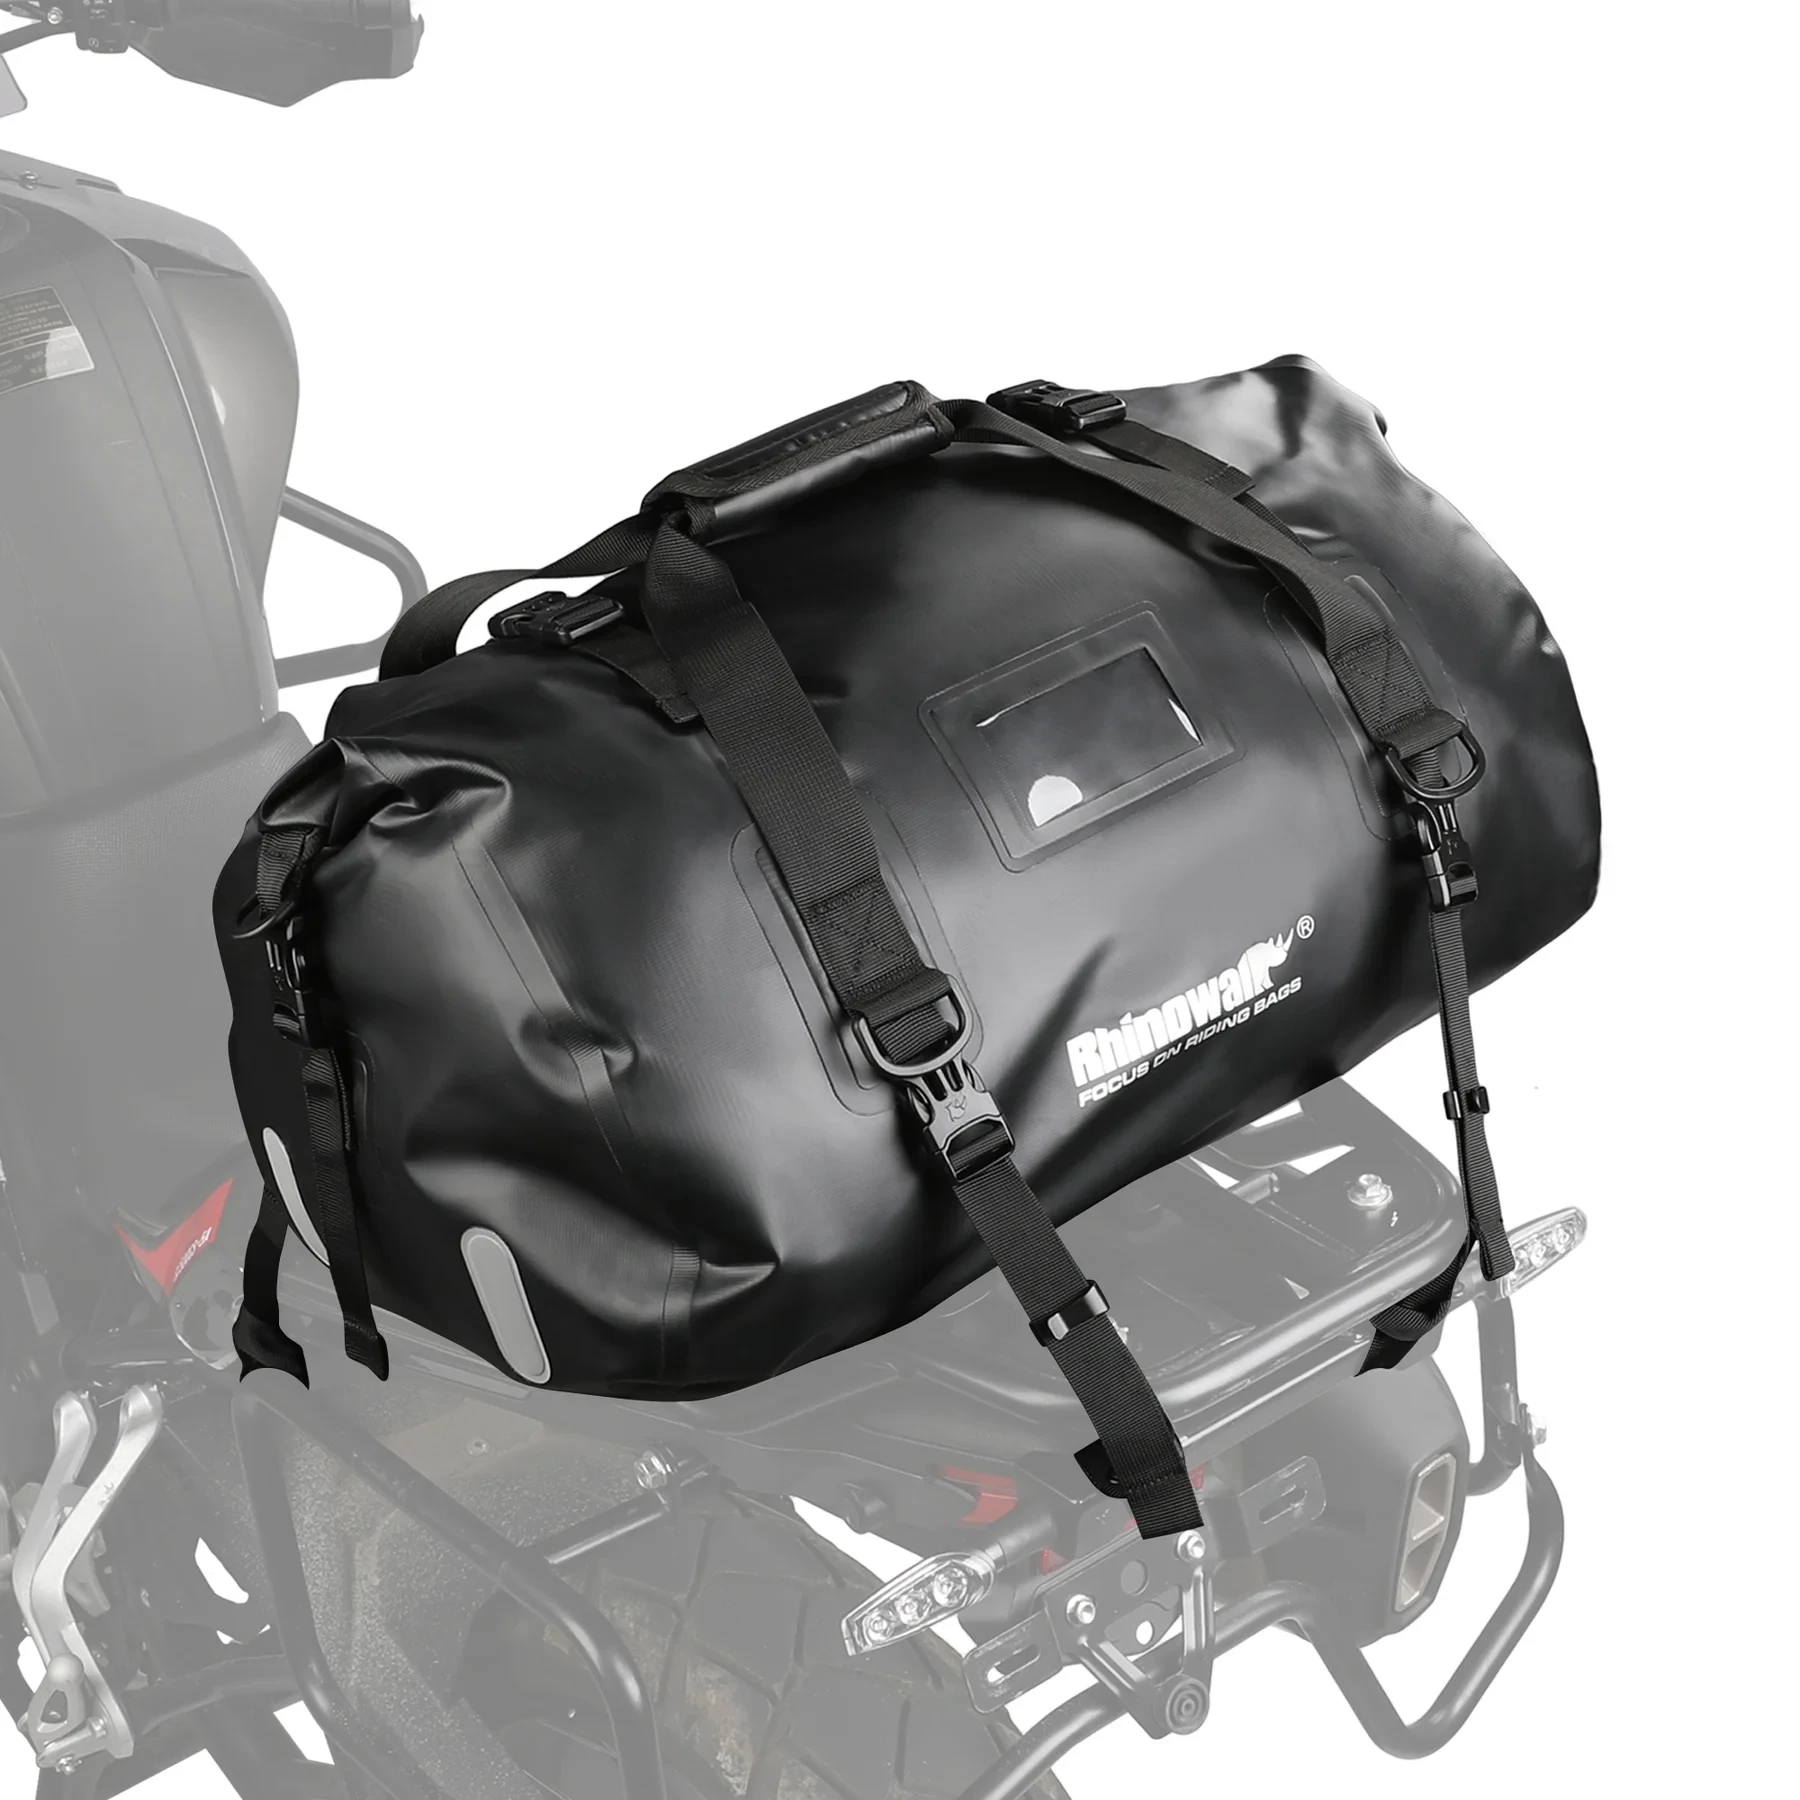 Buy 45L Waterproof Duffle Bag at Hardwarepasal.com || Online Shopping ...